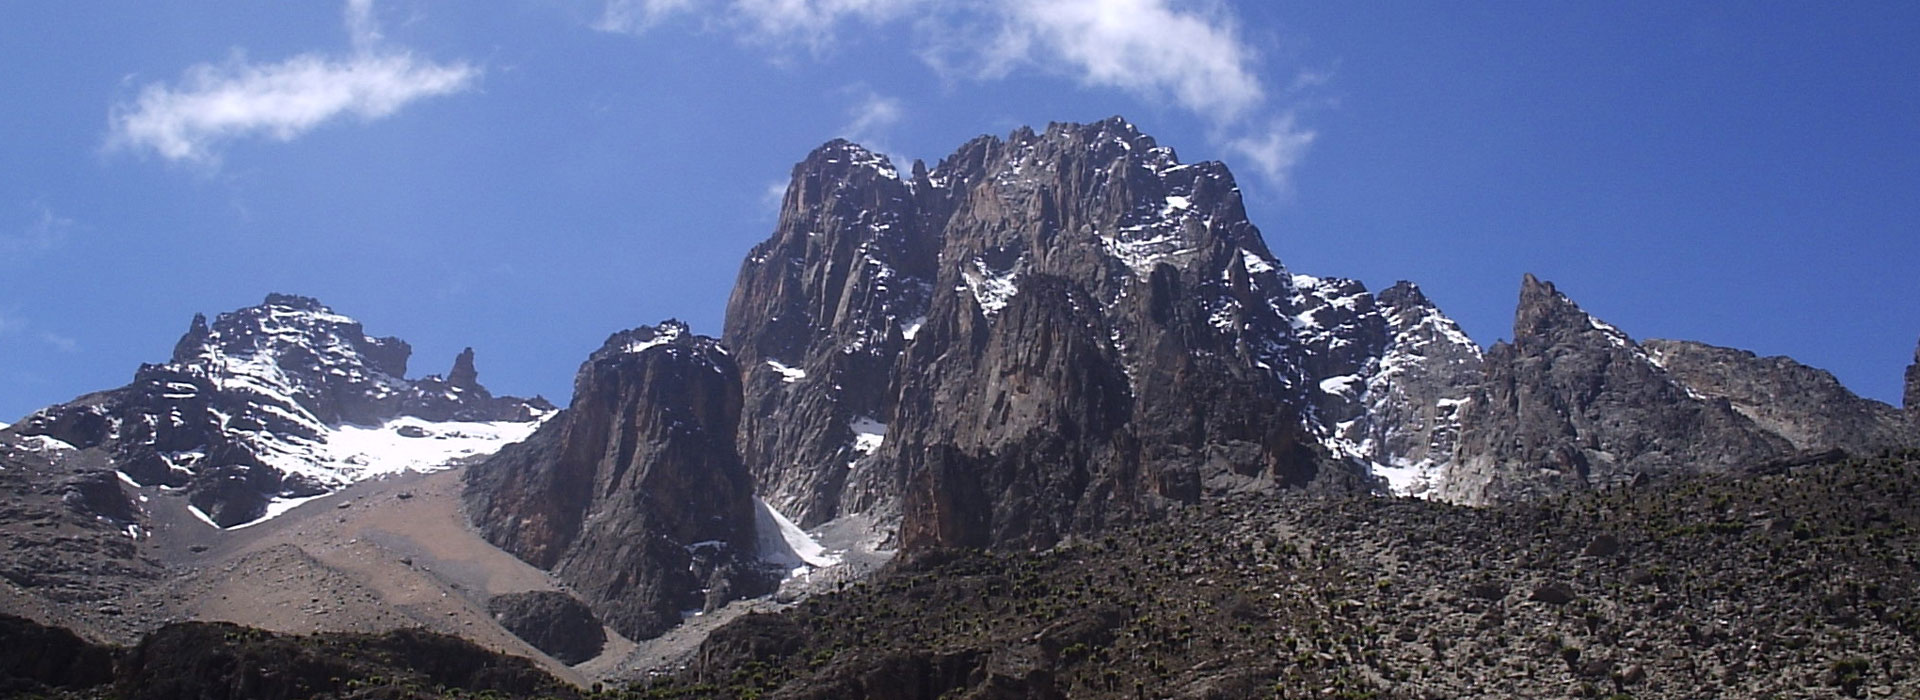 Mount Kenya Climbing NaroMoru Route